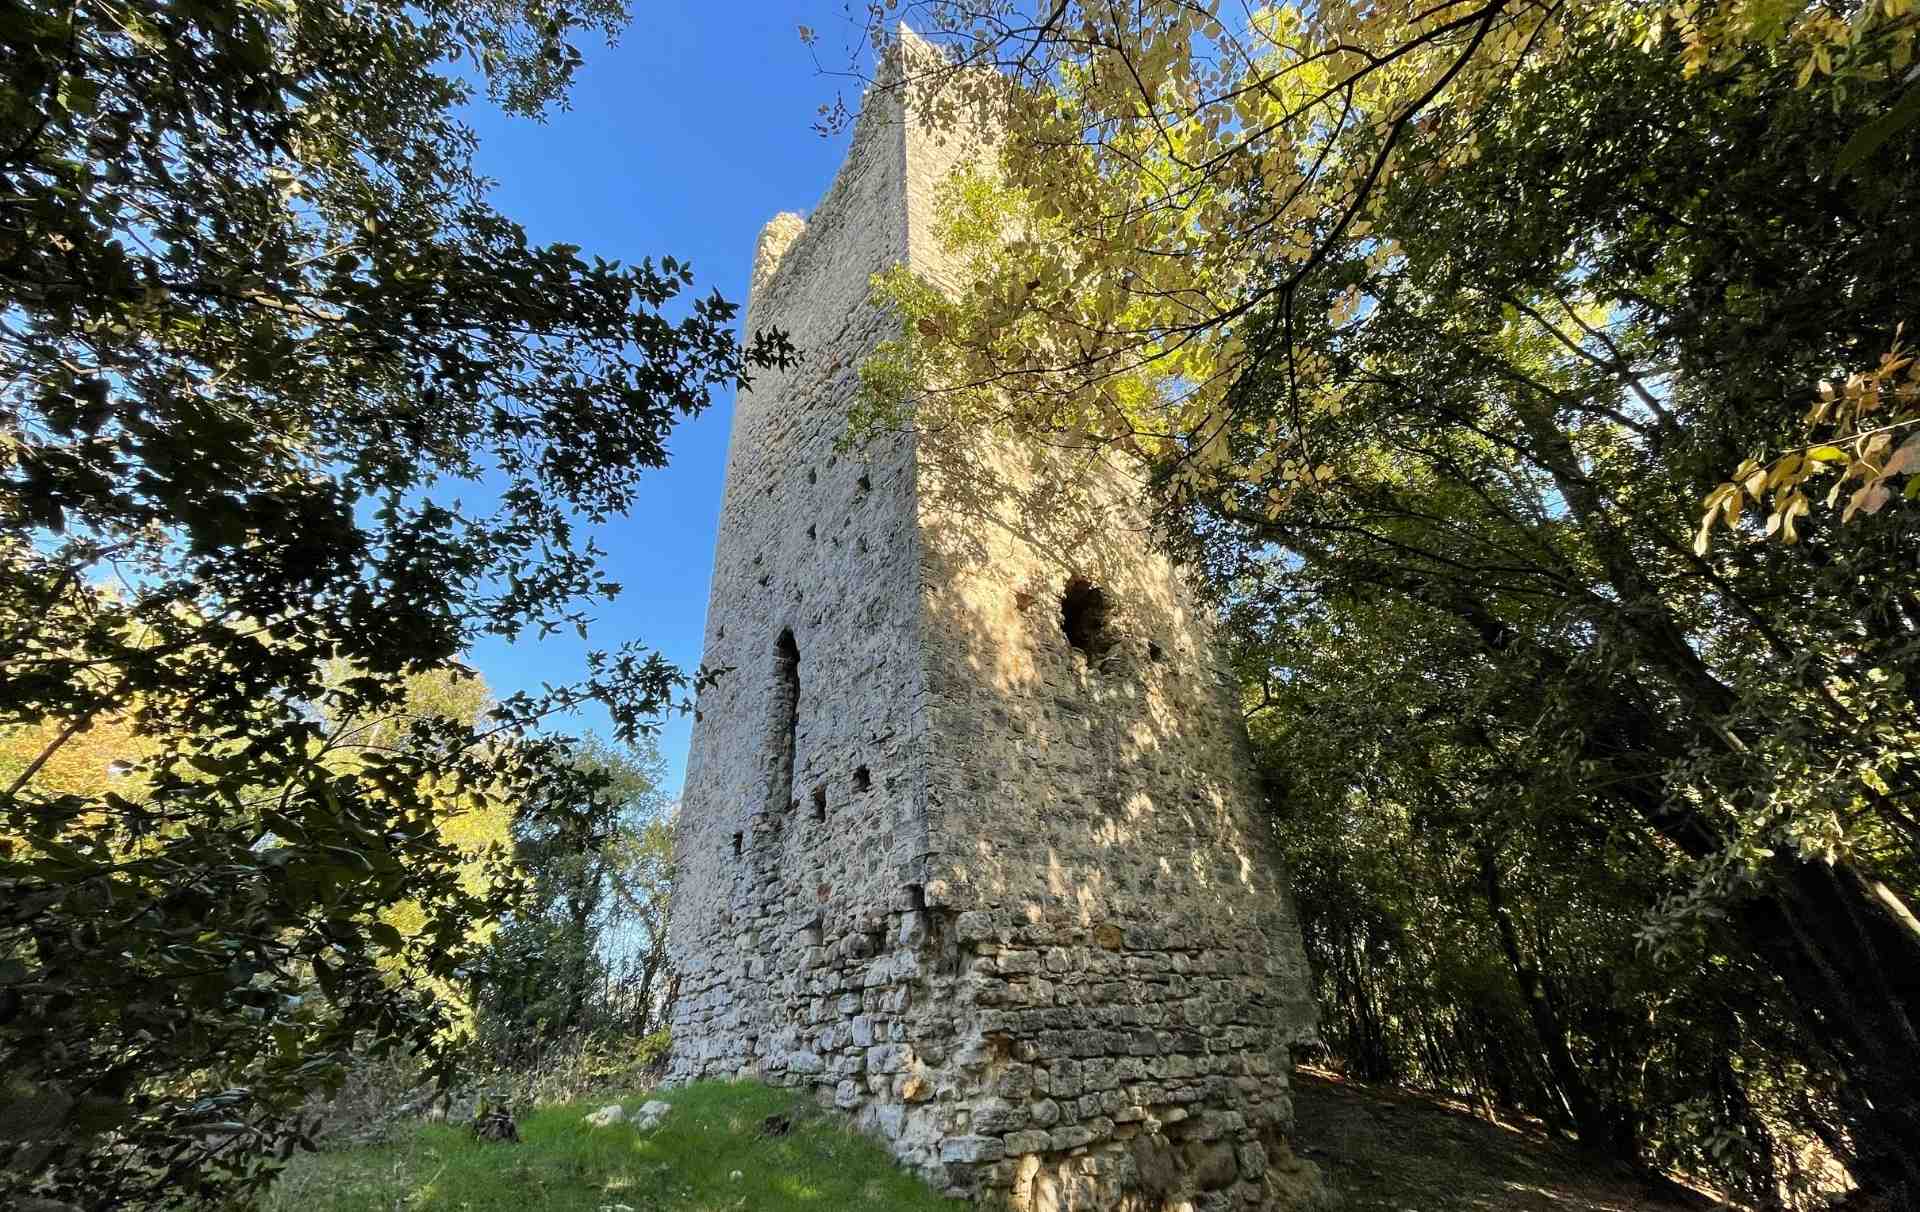 L'antica torre del castello di Bufone che si innalza nella vegetazione sulla collina